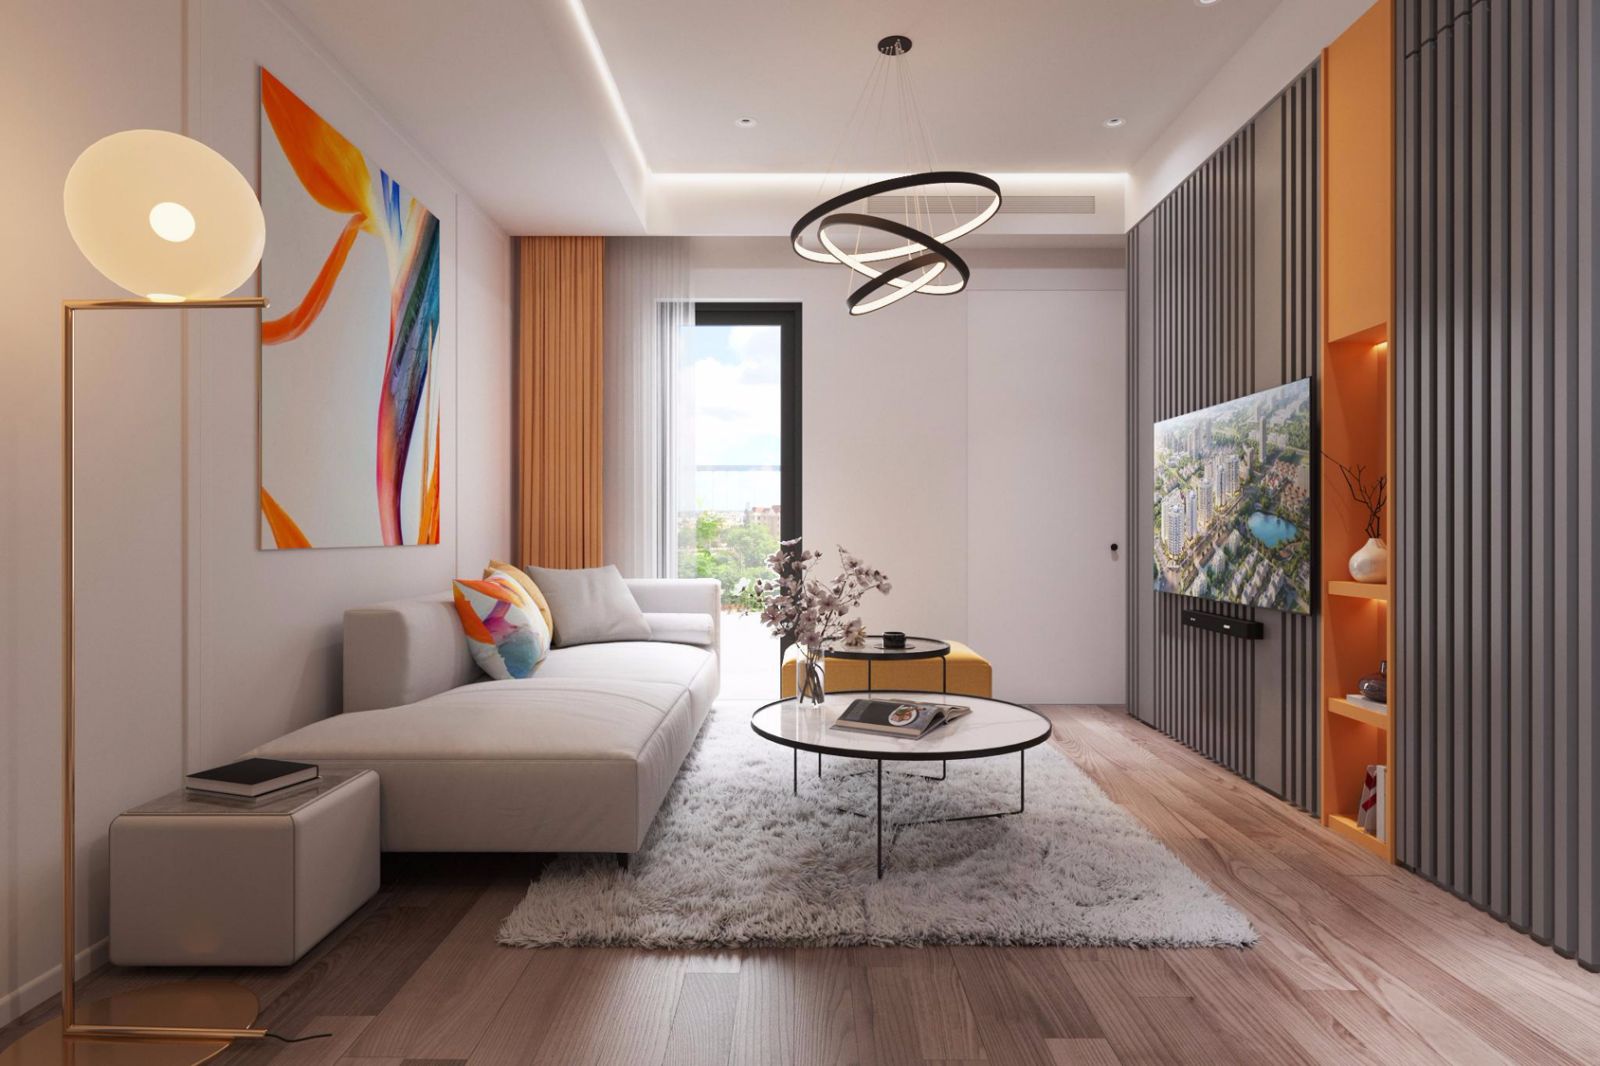 Bạn có căn hộ 54m2 và đang gặp khó khăn trong việc thiết kế nội thất? Hãy xem ngay hình ảnh liên quan để tham khảo các ý tưởng thiết kế thông minh và đẹp mắt cho căn hộ của bạn.